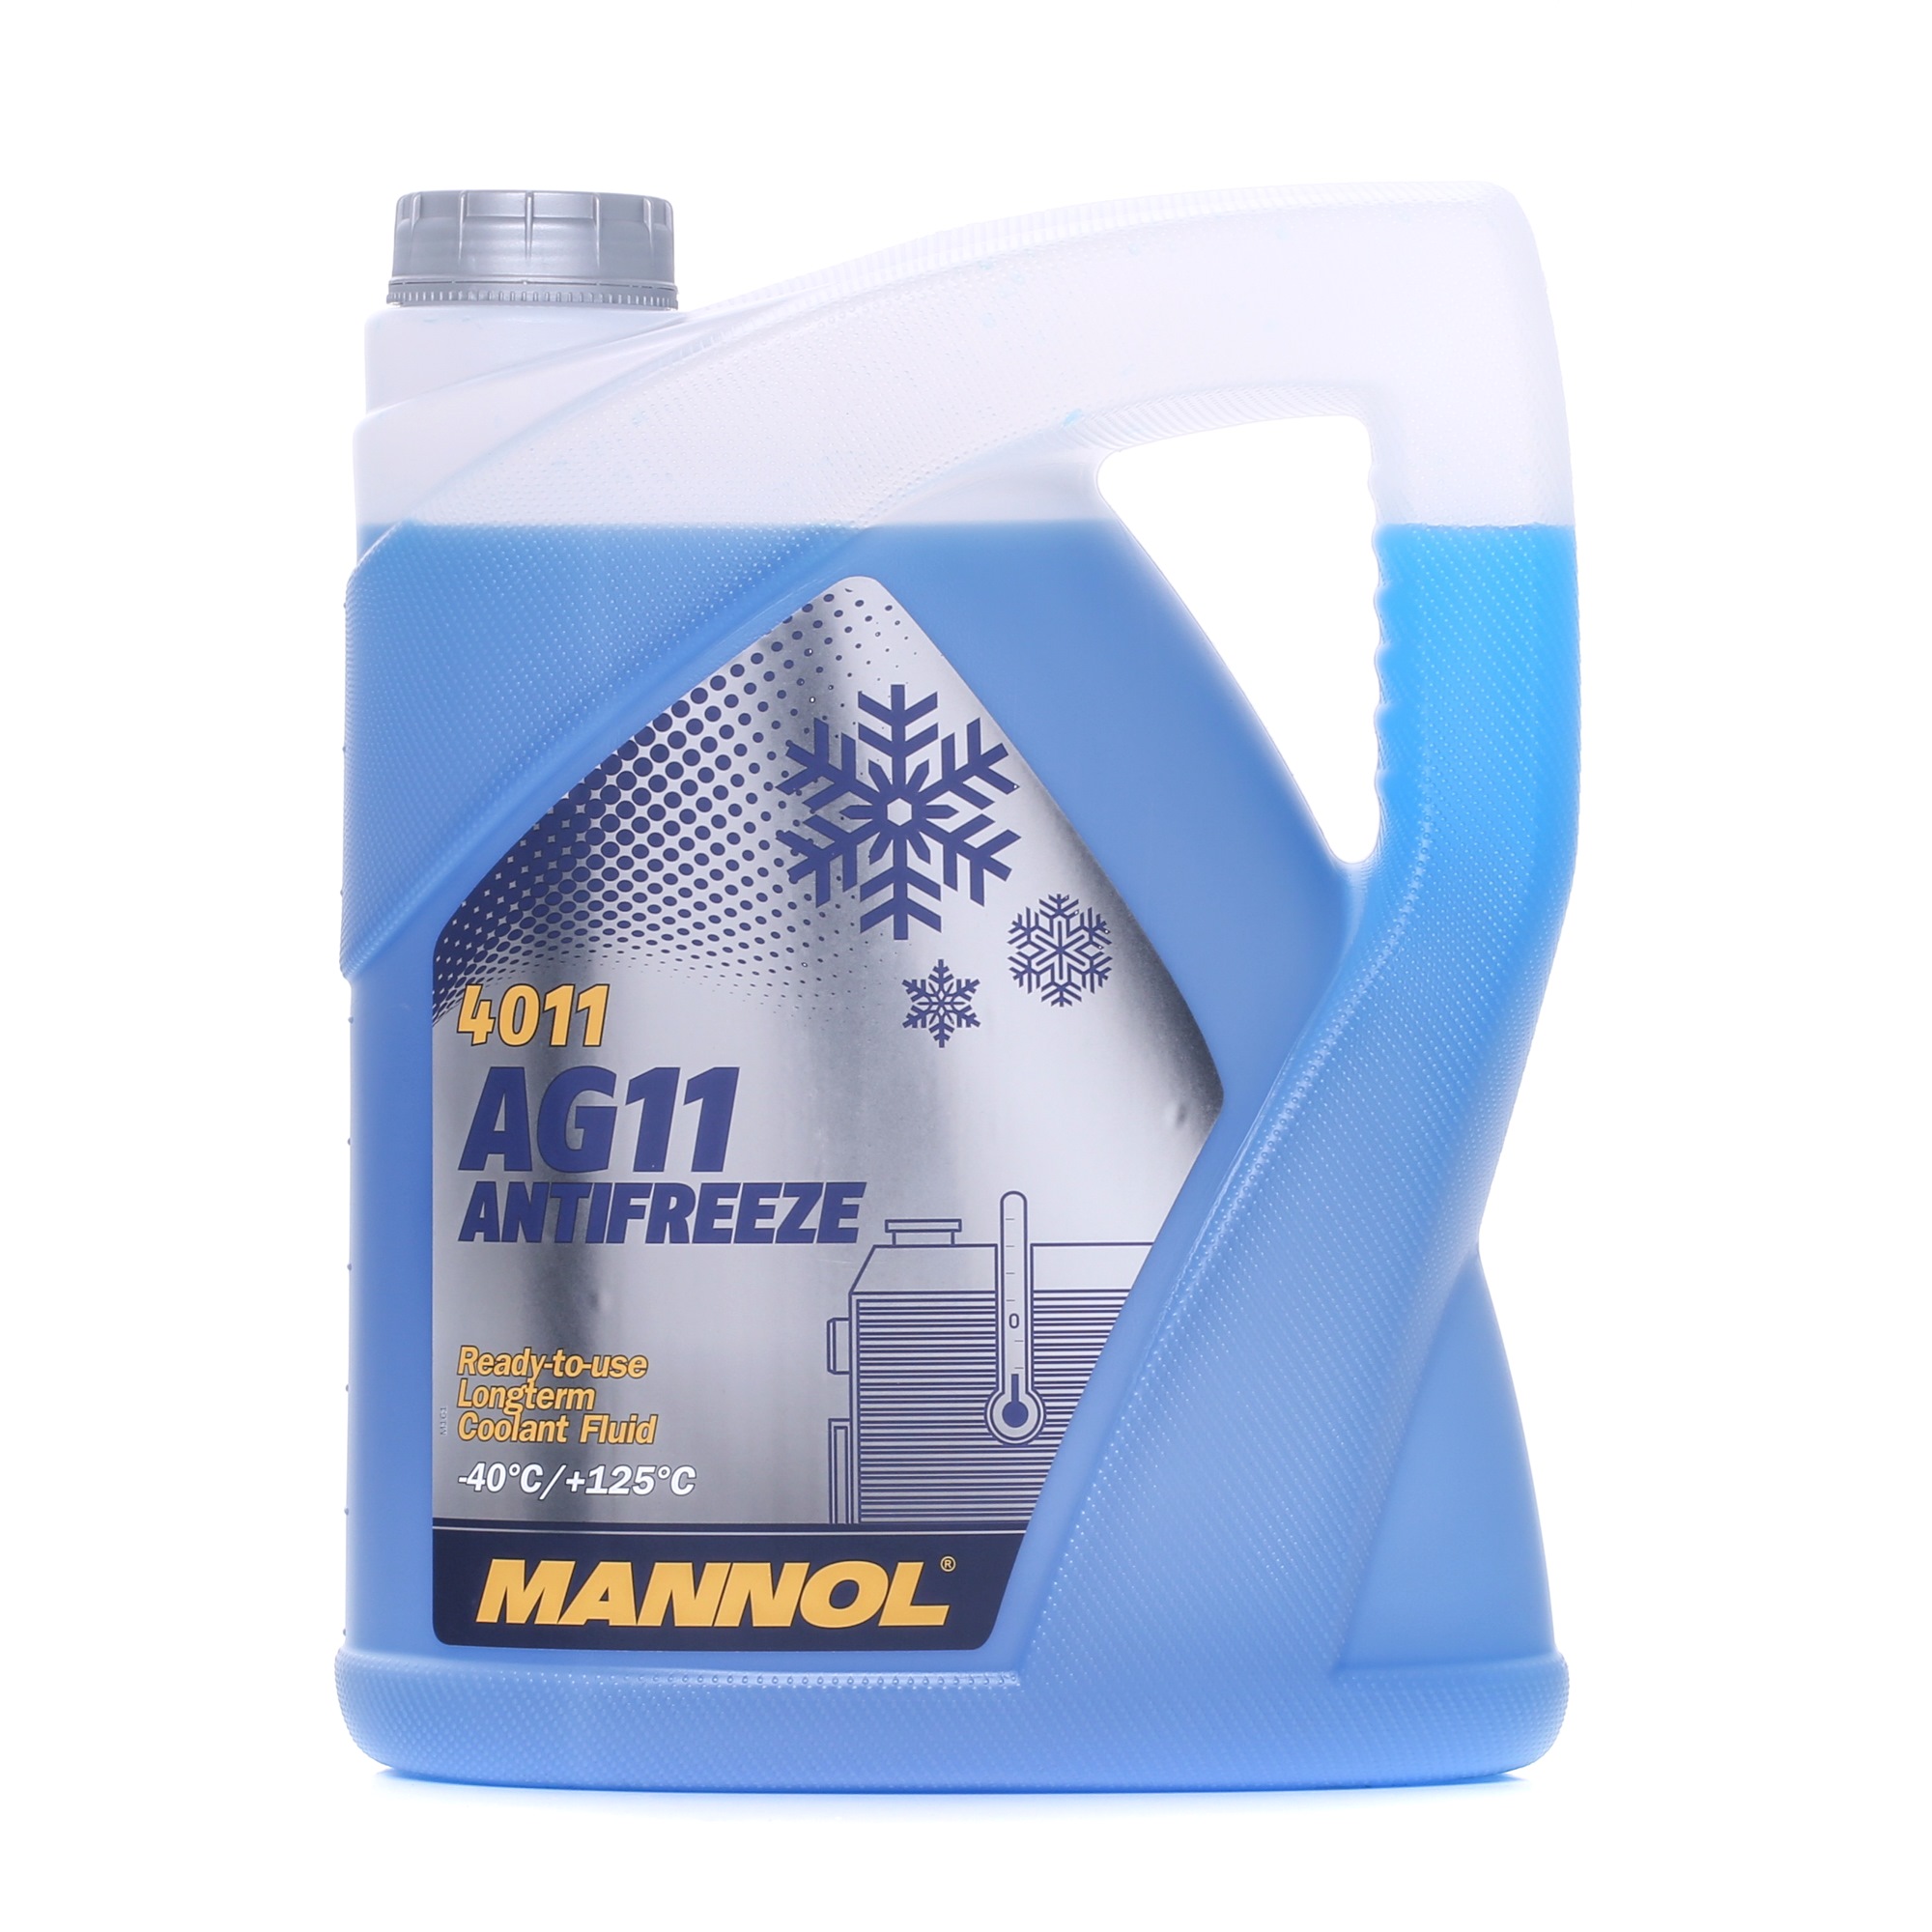 MN4011-5 MANNOL AG11 Longterm G11 blau, 5l G11, Temperaturbereich von: -40°C Frostschutz MN4011-5 günstig kaufen